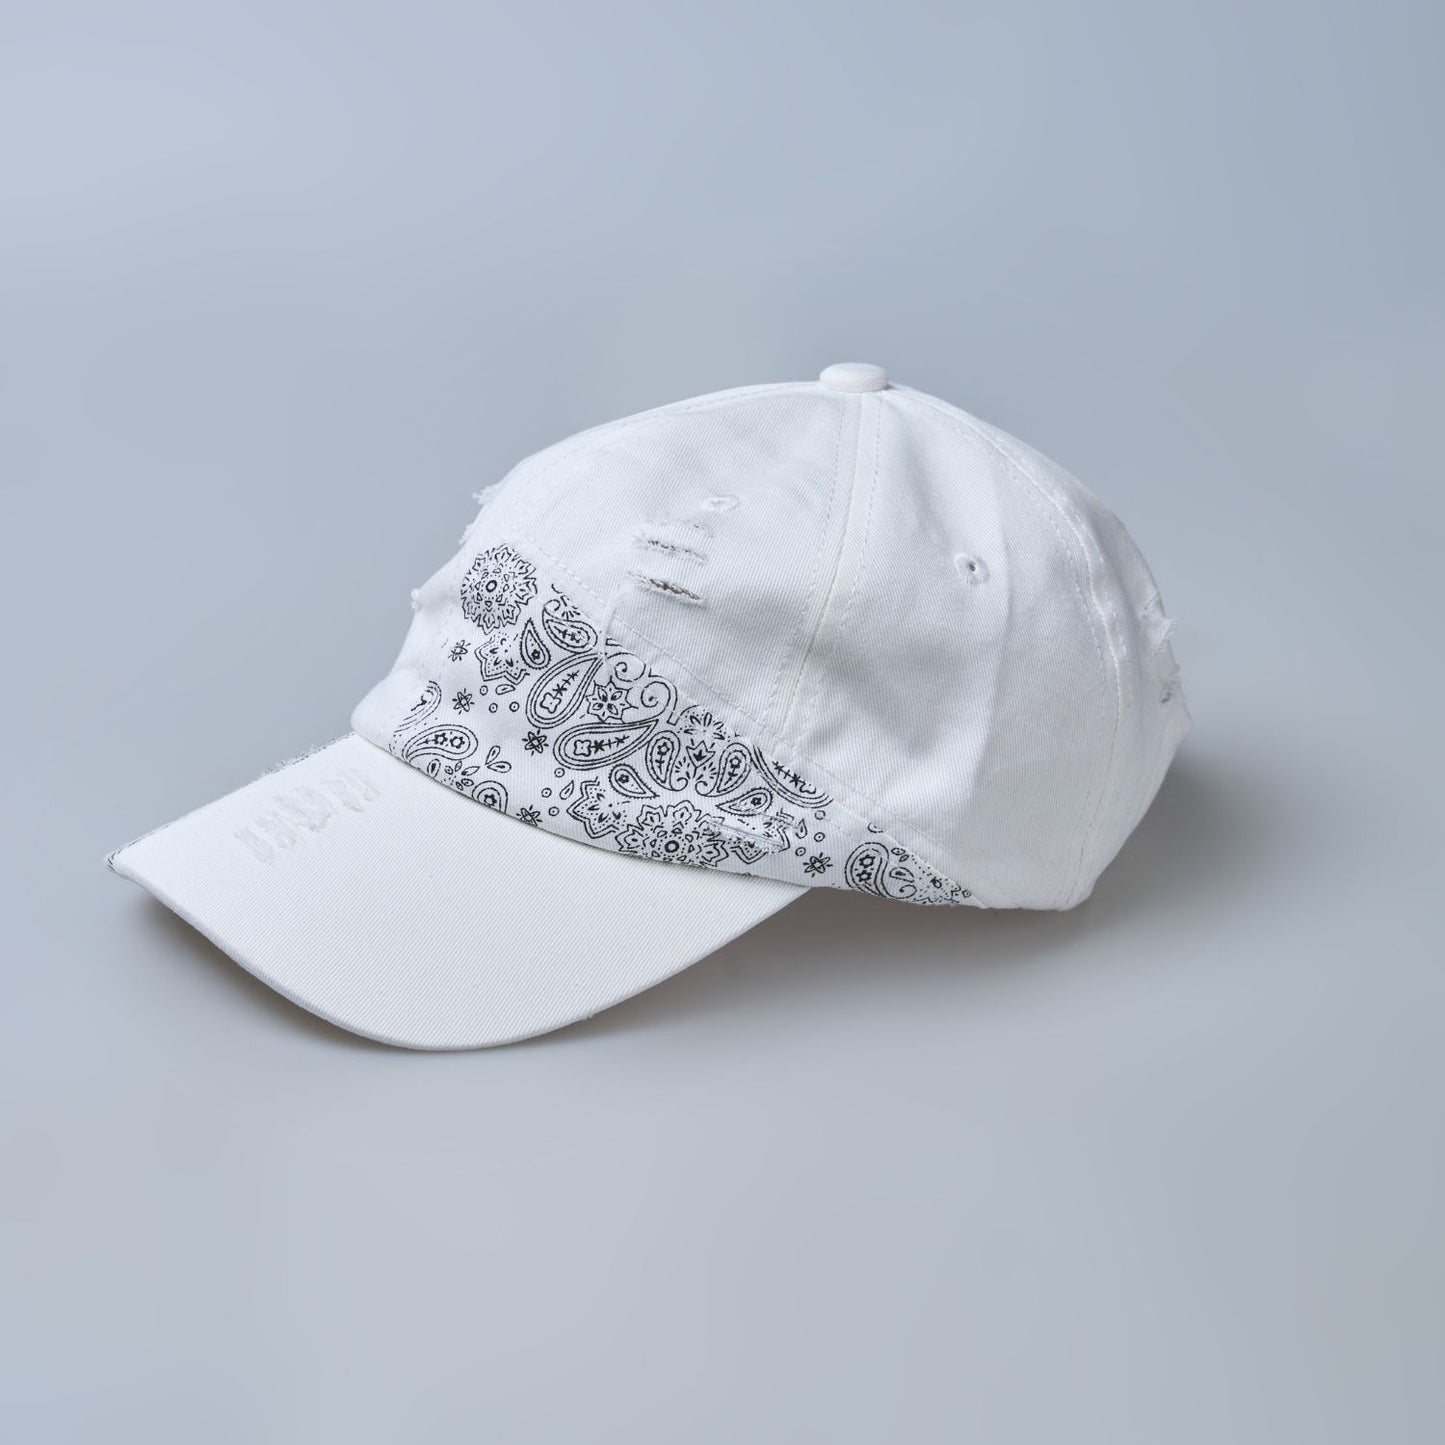 white colored, wide brim designer cap for men with adjustable strap, side design.